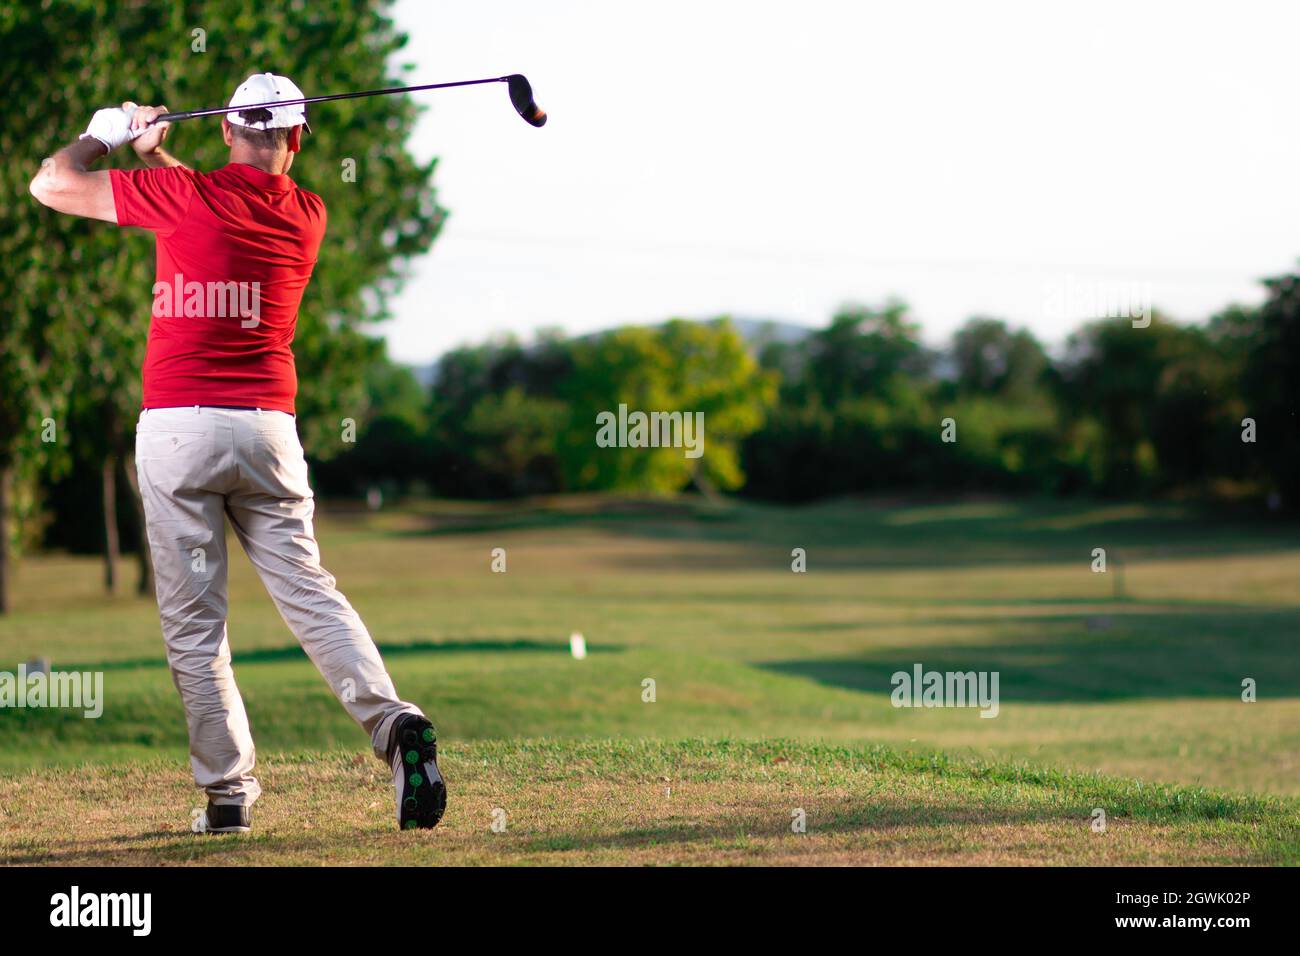 Duración completa del hombre jugando en el campo de golf Foto de stock